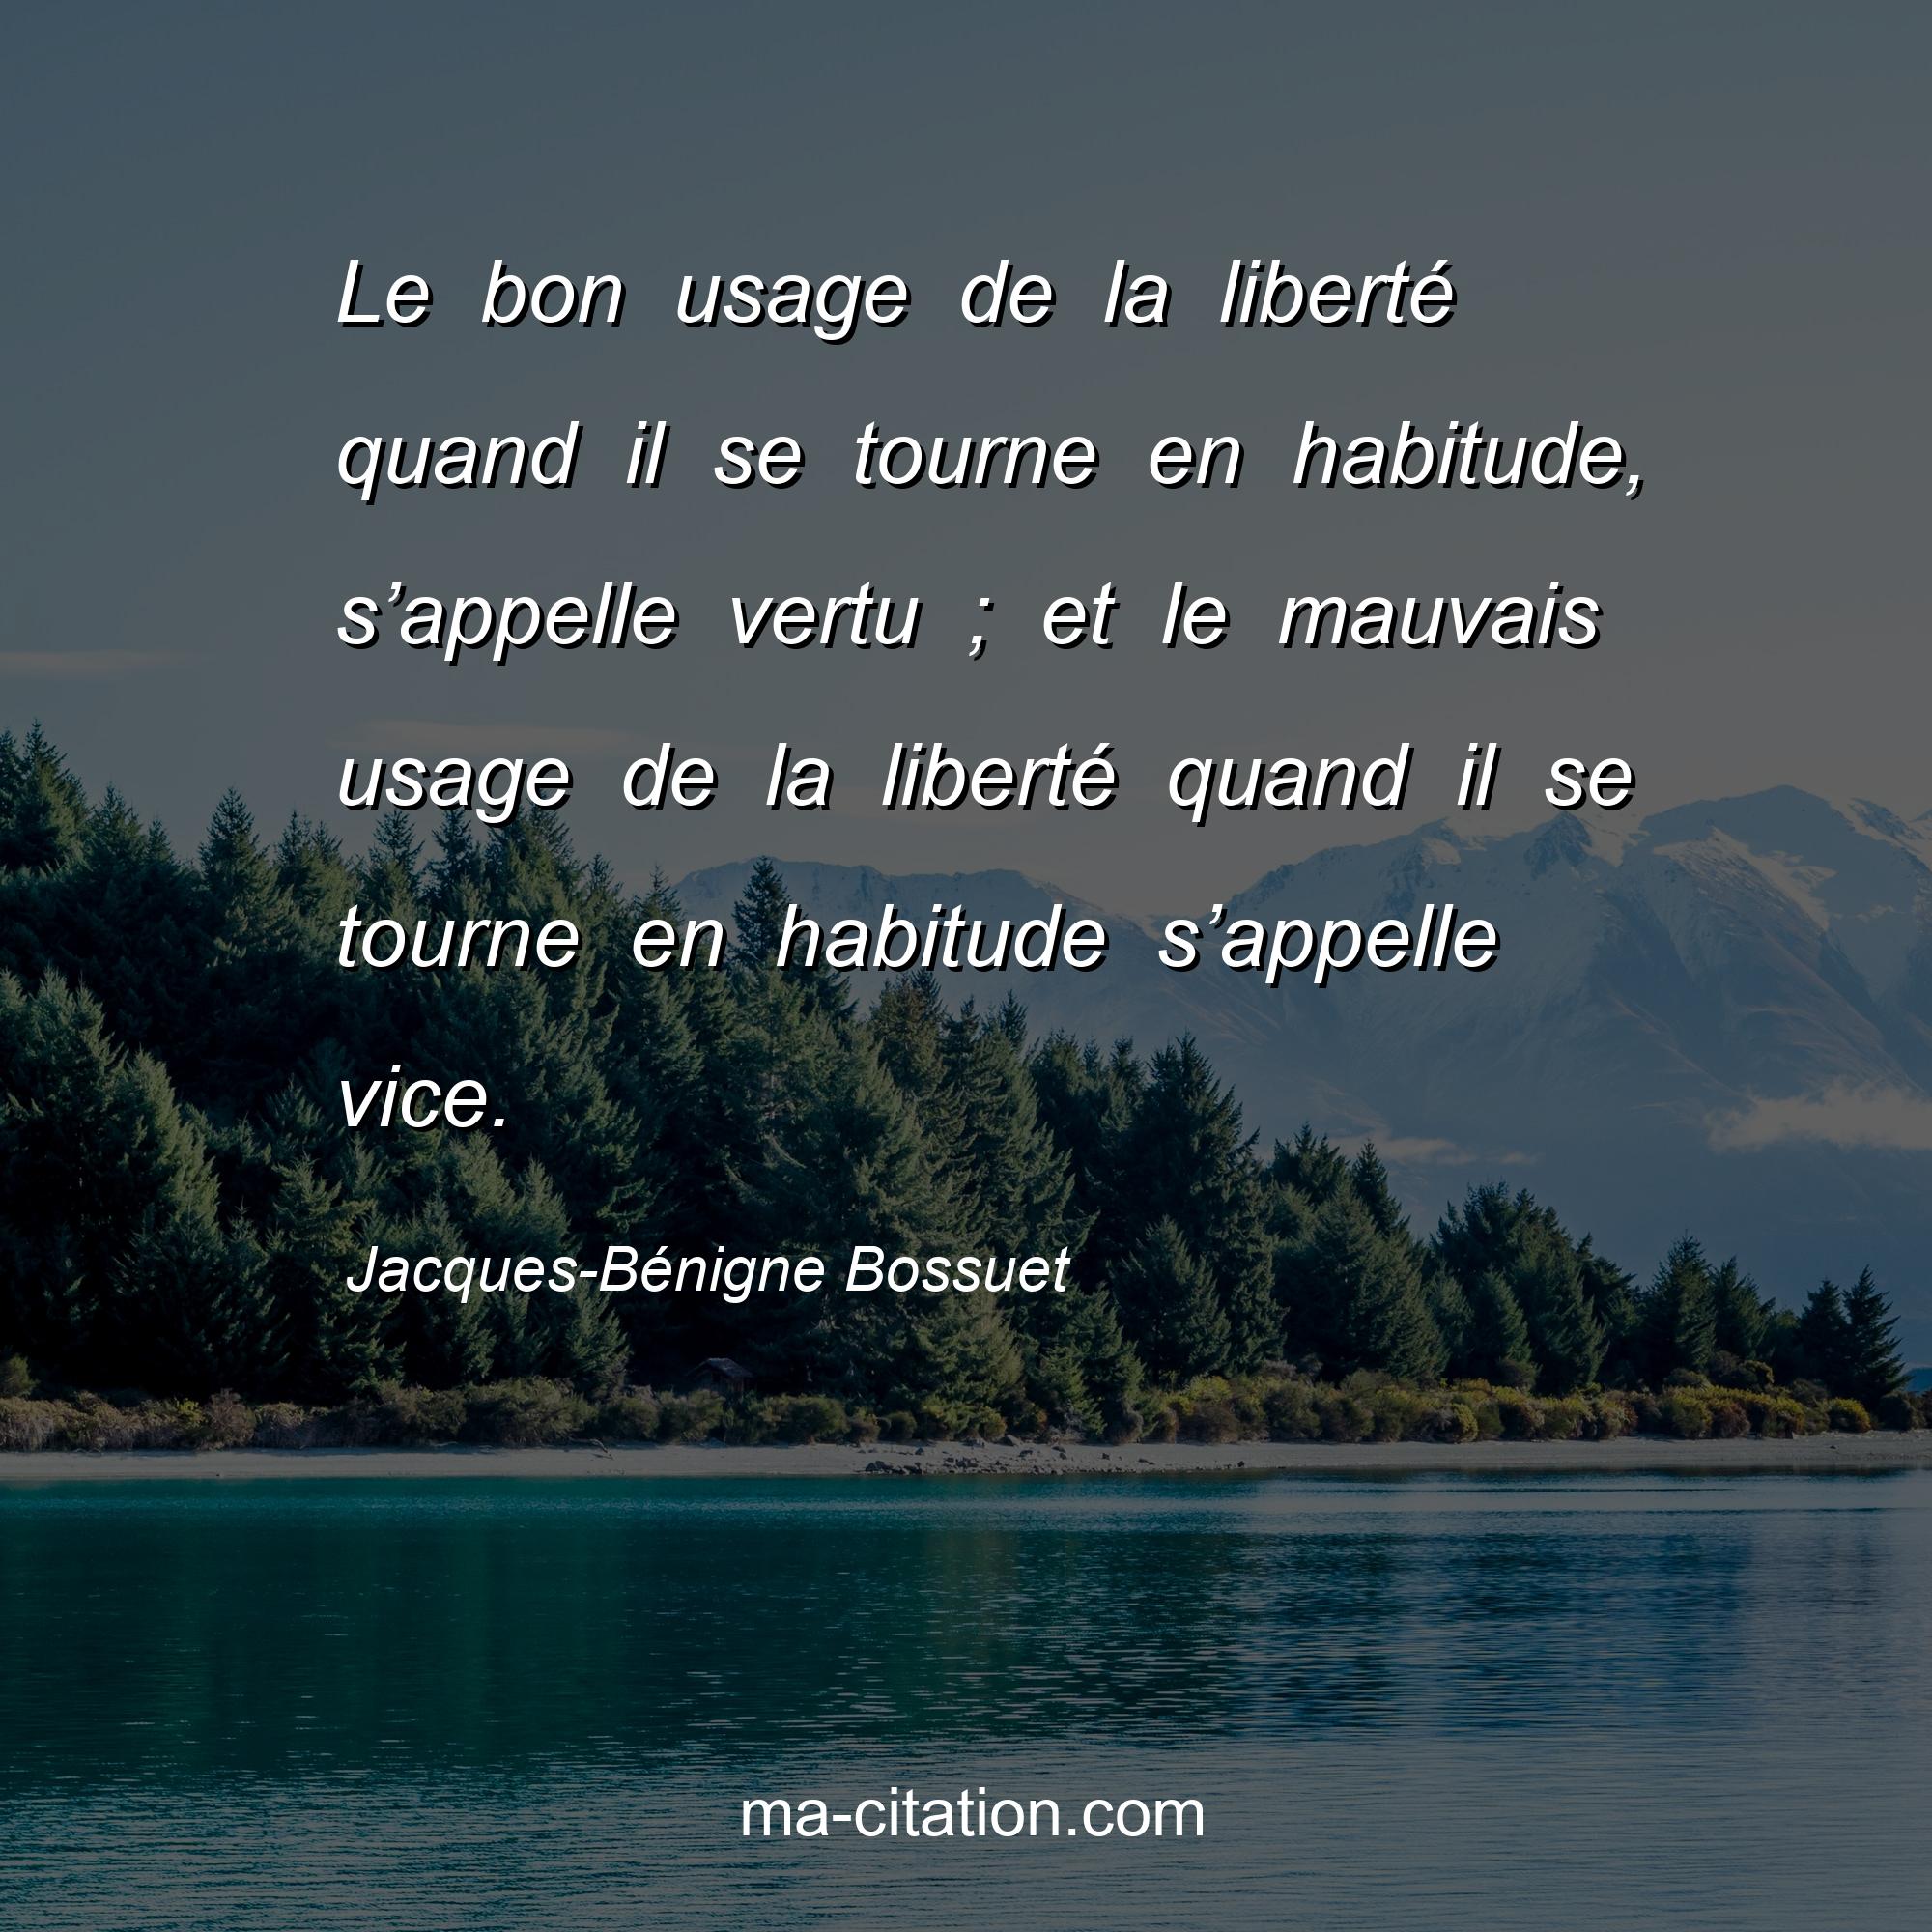 Jacques-Bénigne Bossuet : Le bon usage de la liberté quand il se tourne en habitude, s’appelle vertu ; et le mauvais usage de la liberté quand il se tourne en habitude s’appelle vice.